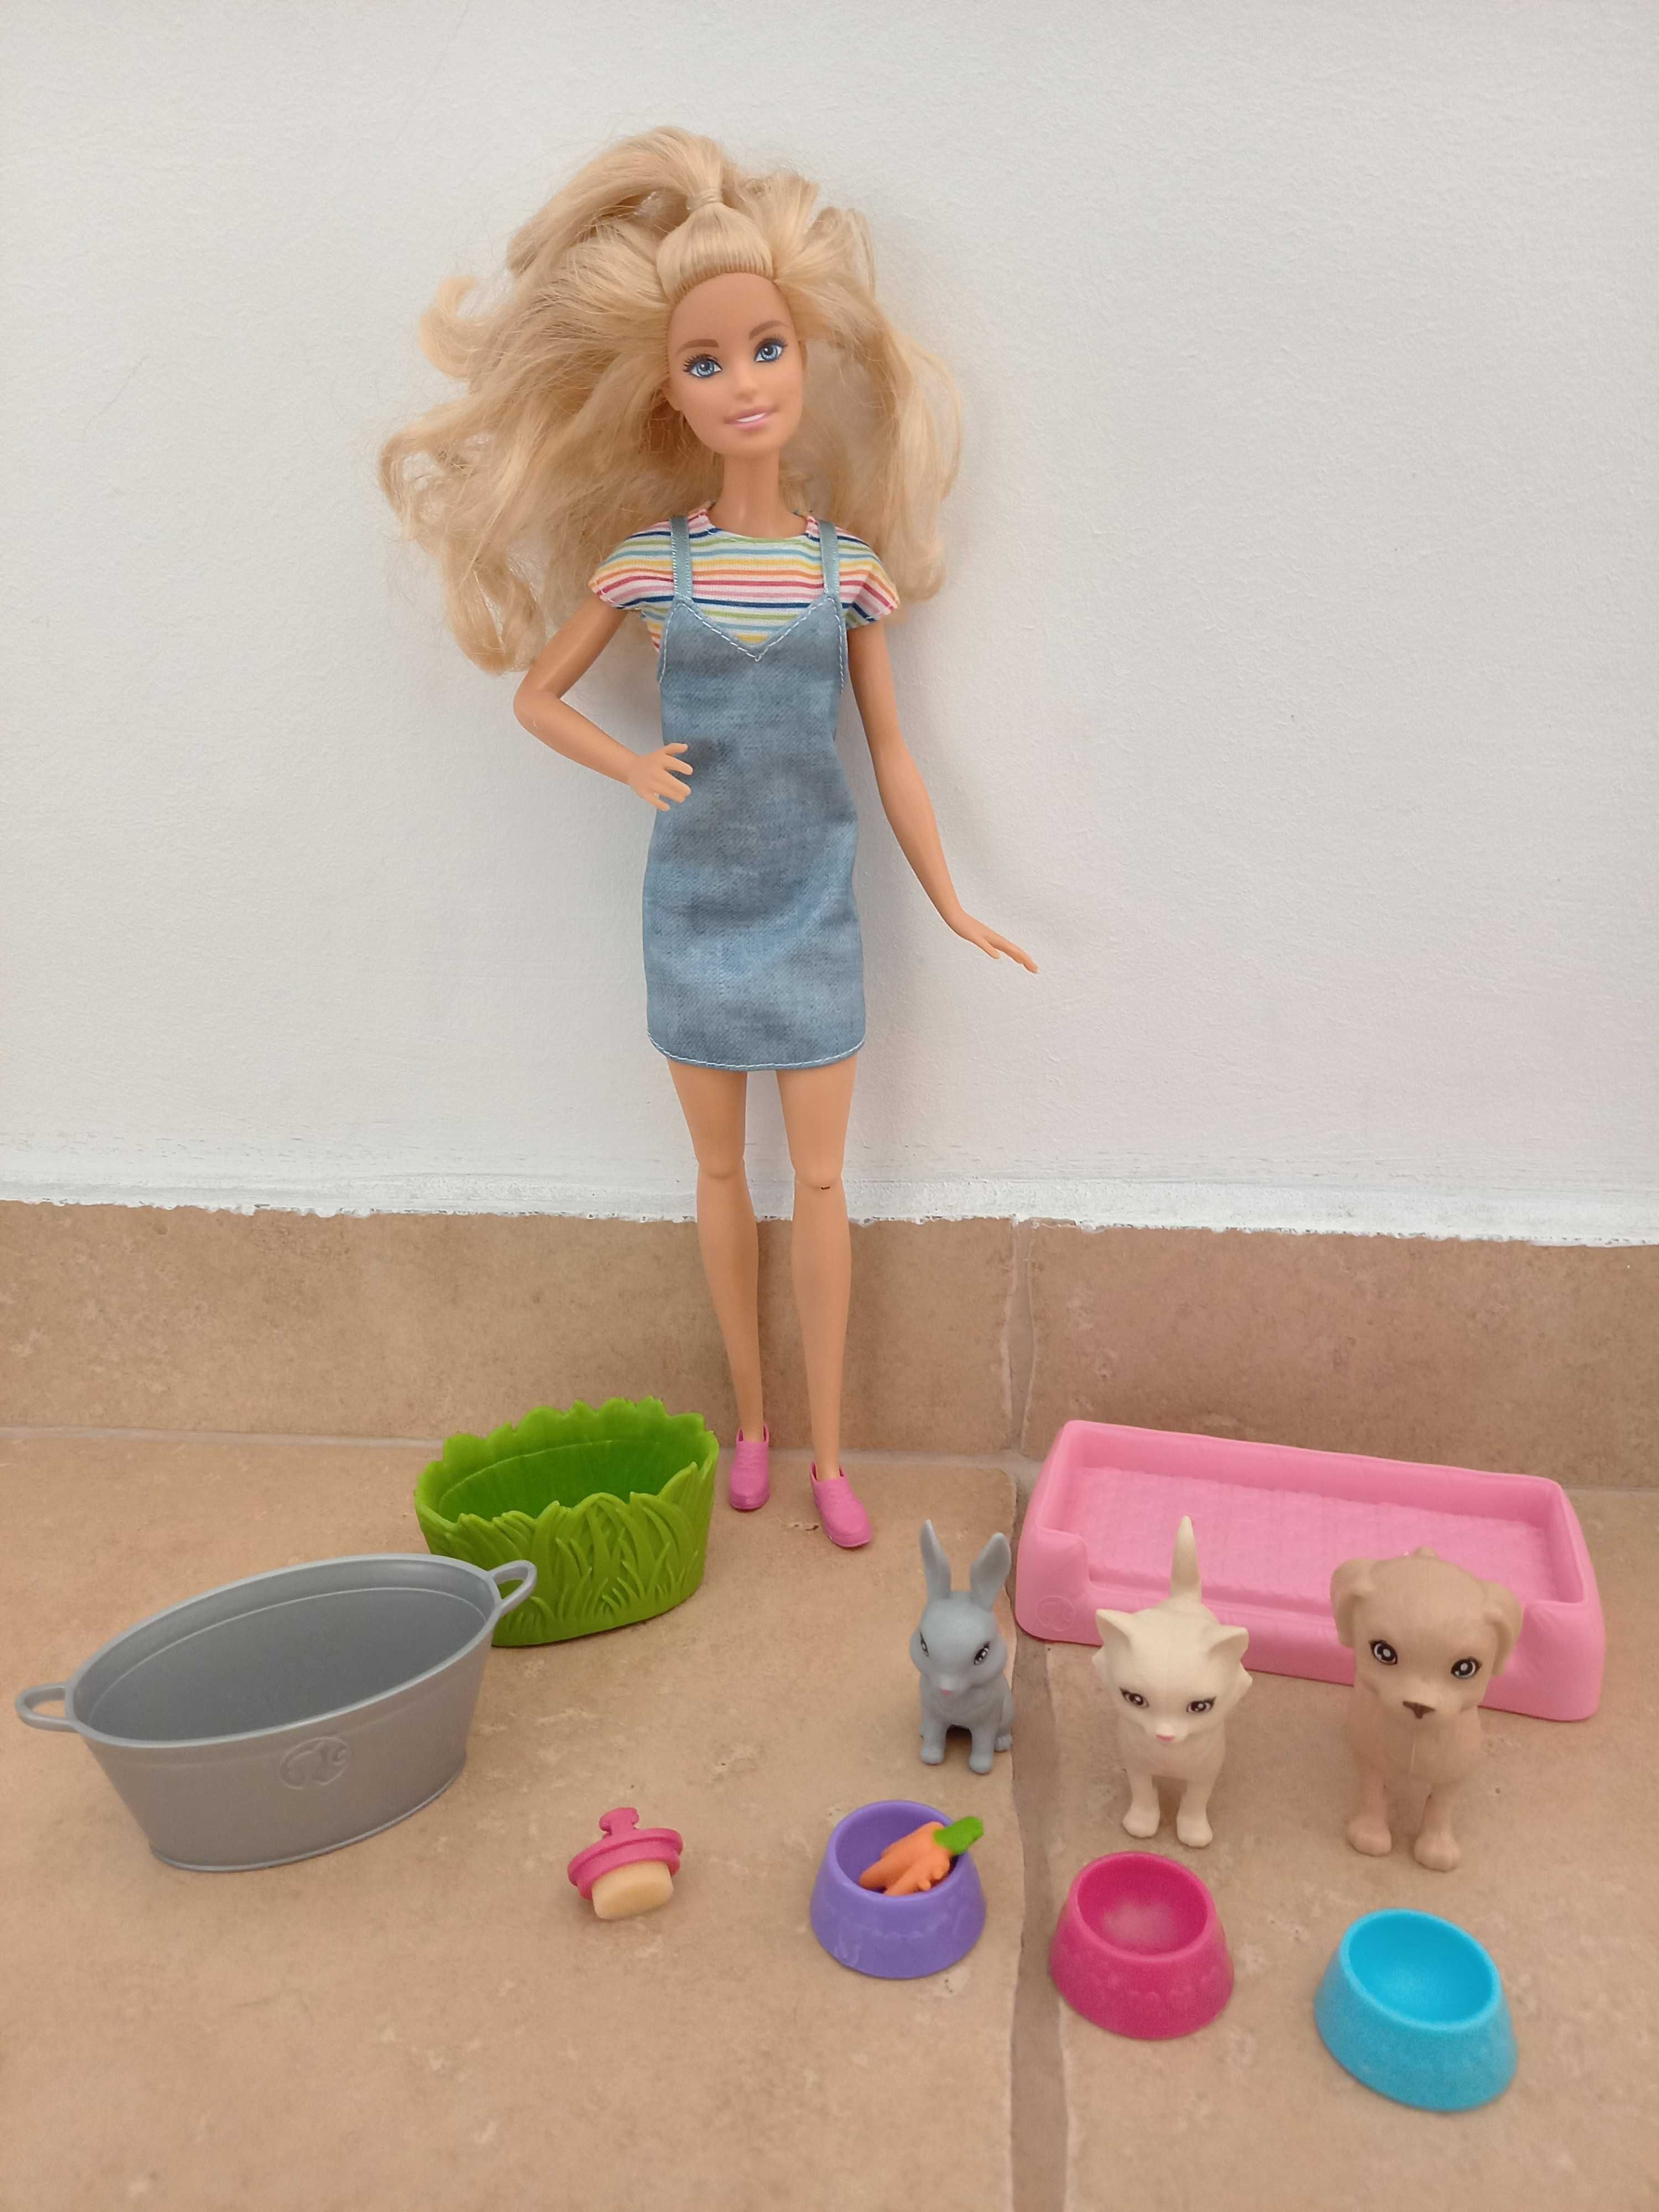 Seturi Barbie calatorie, cu catel, pizza, animale, bicicleta, delfin